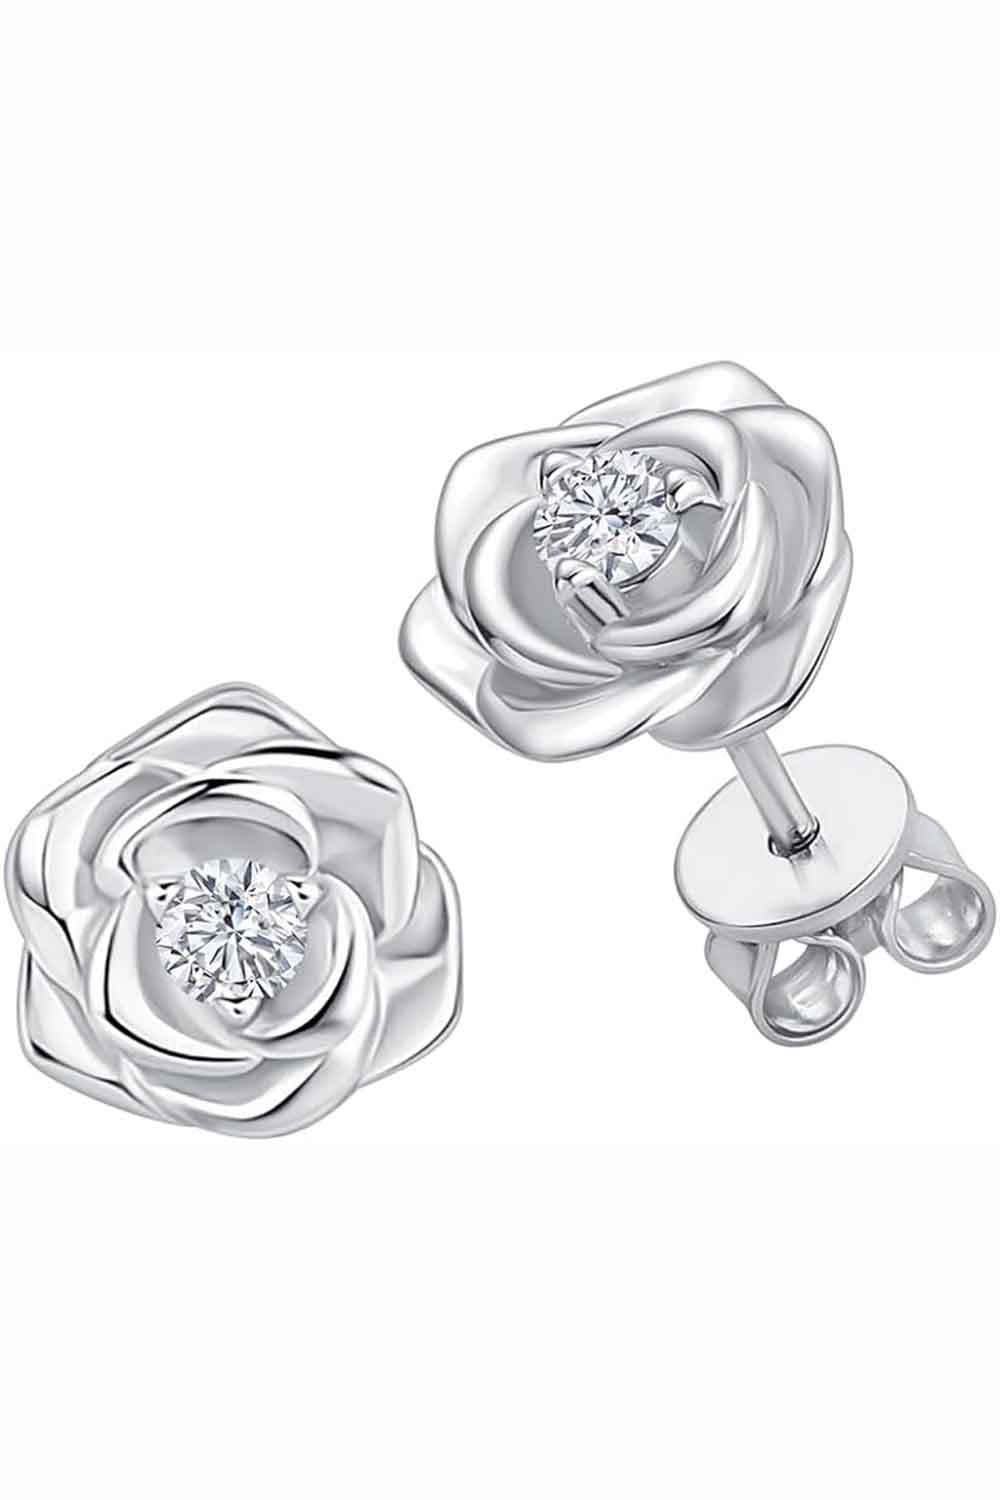 White Gold Color Rose Flower Stud Earrings, Stud Earrings for Women